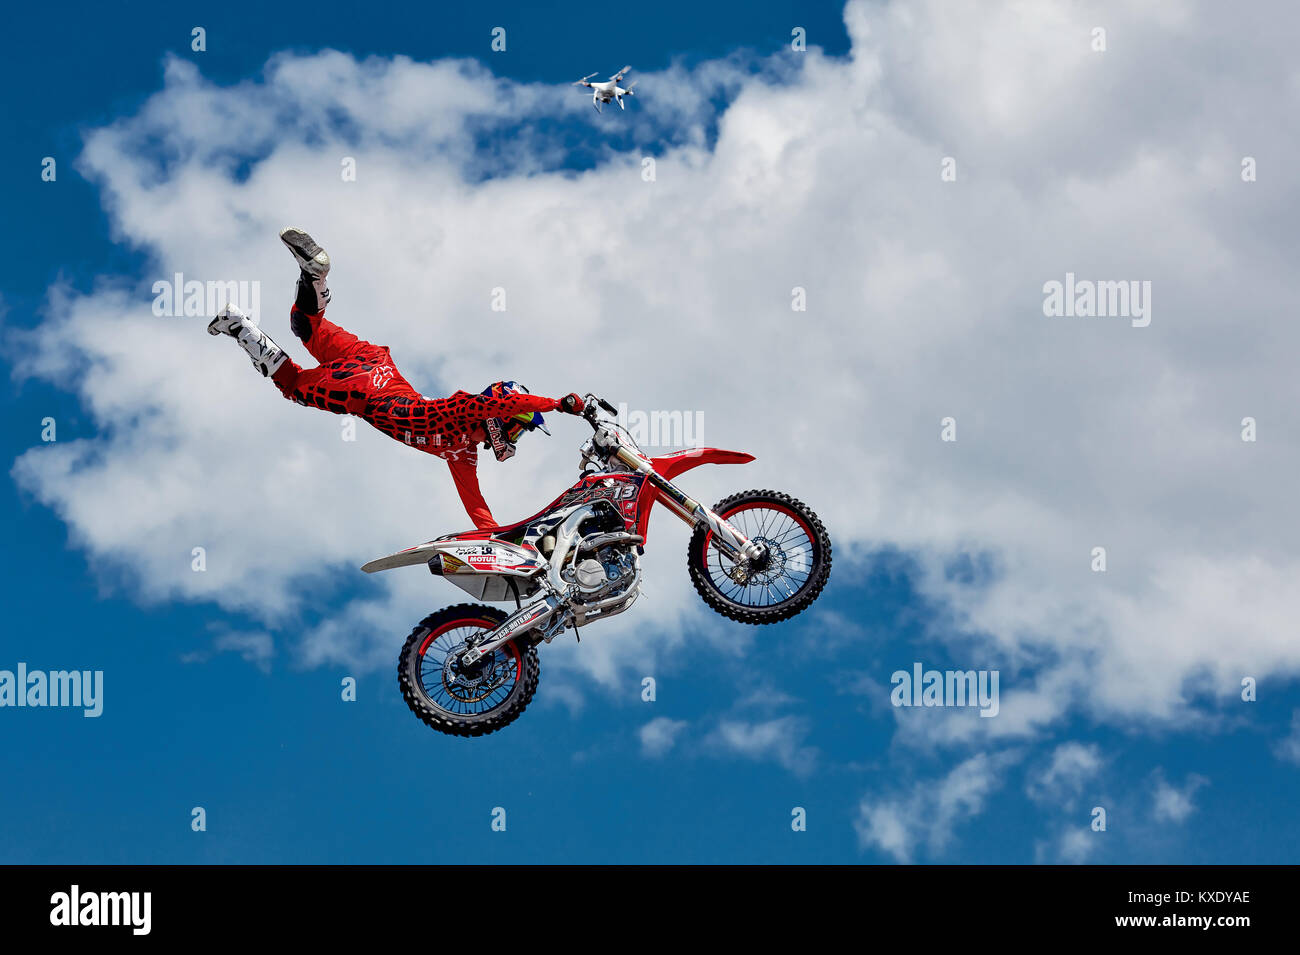 Cavalier Professionnel à la FMX (motocross freestyle) faire un saut acrobatique à l'automobile. Tous Rostov en 2017. 28.05.2017, Rostov-sur-Don, Russie Banque D'Images